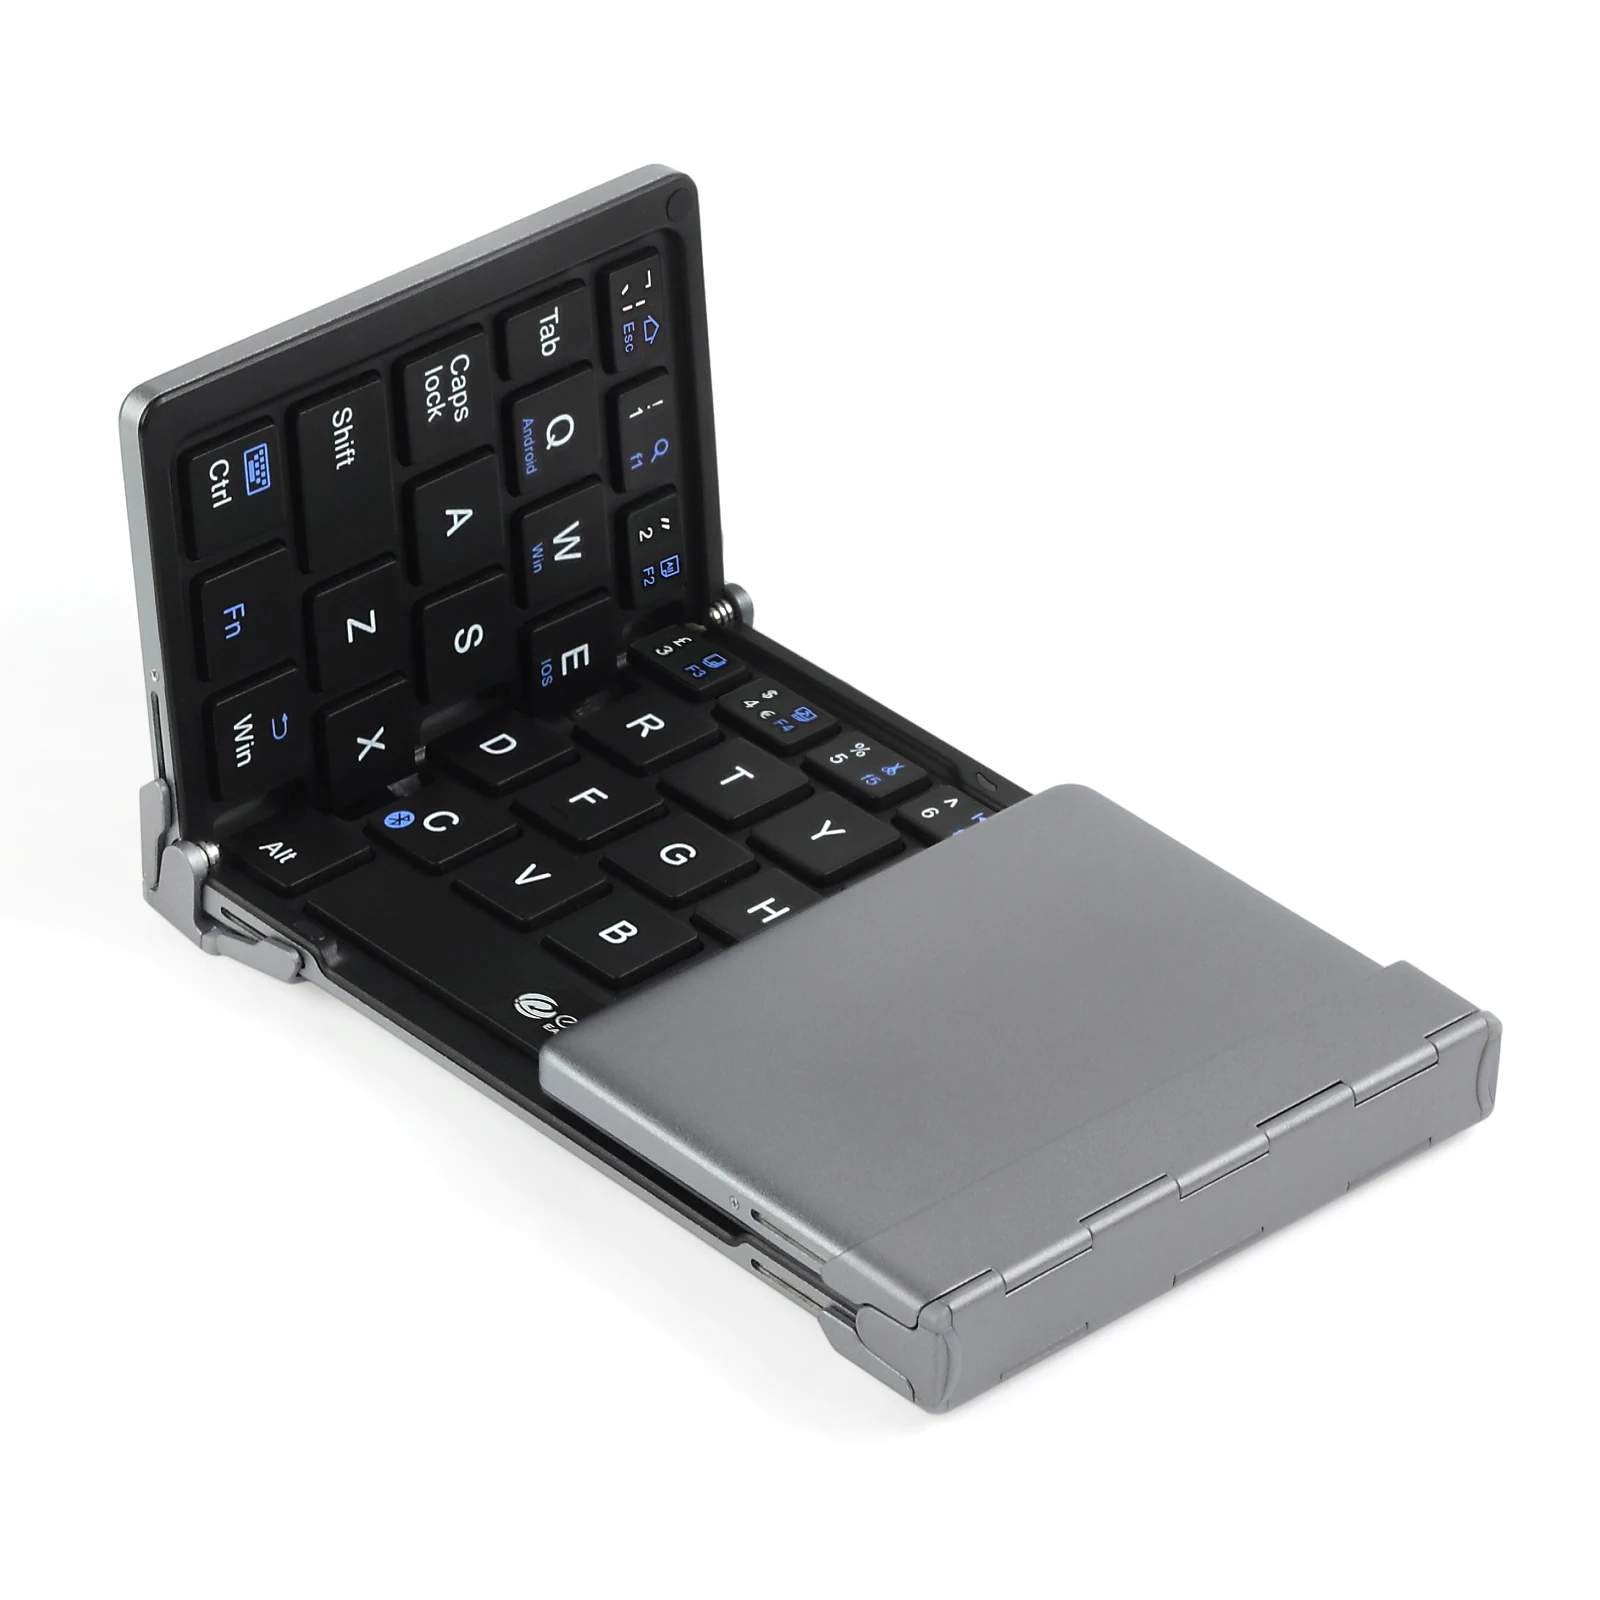 PROSTER итальянская английская Складная Bluetooth беспроводная клавиатура Гибкая клавиатура для IOS Android Windows планшет